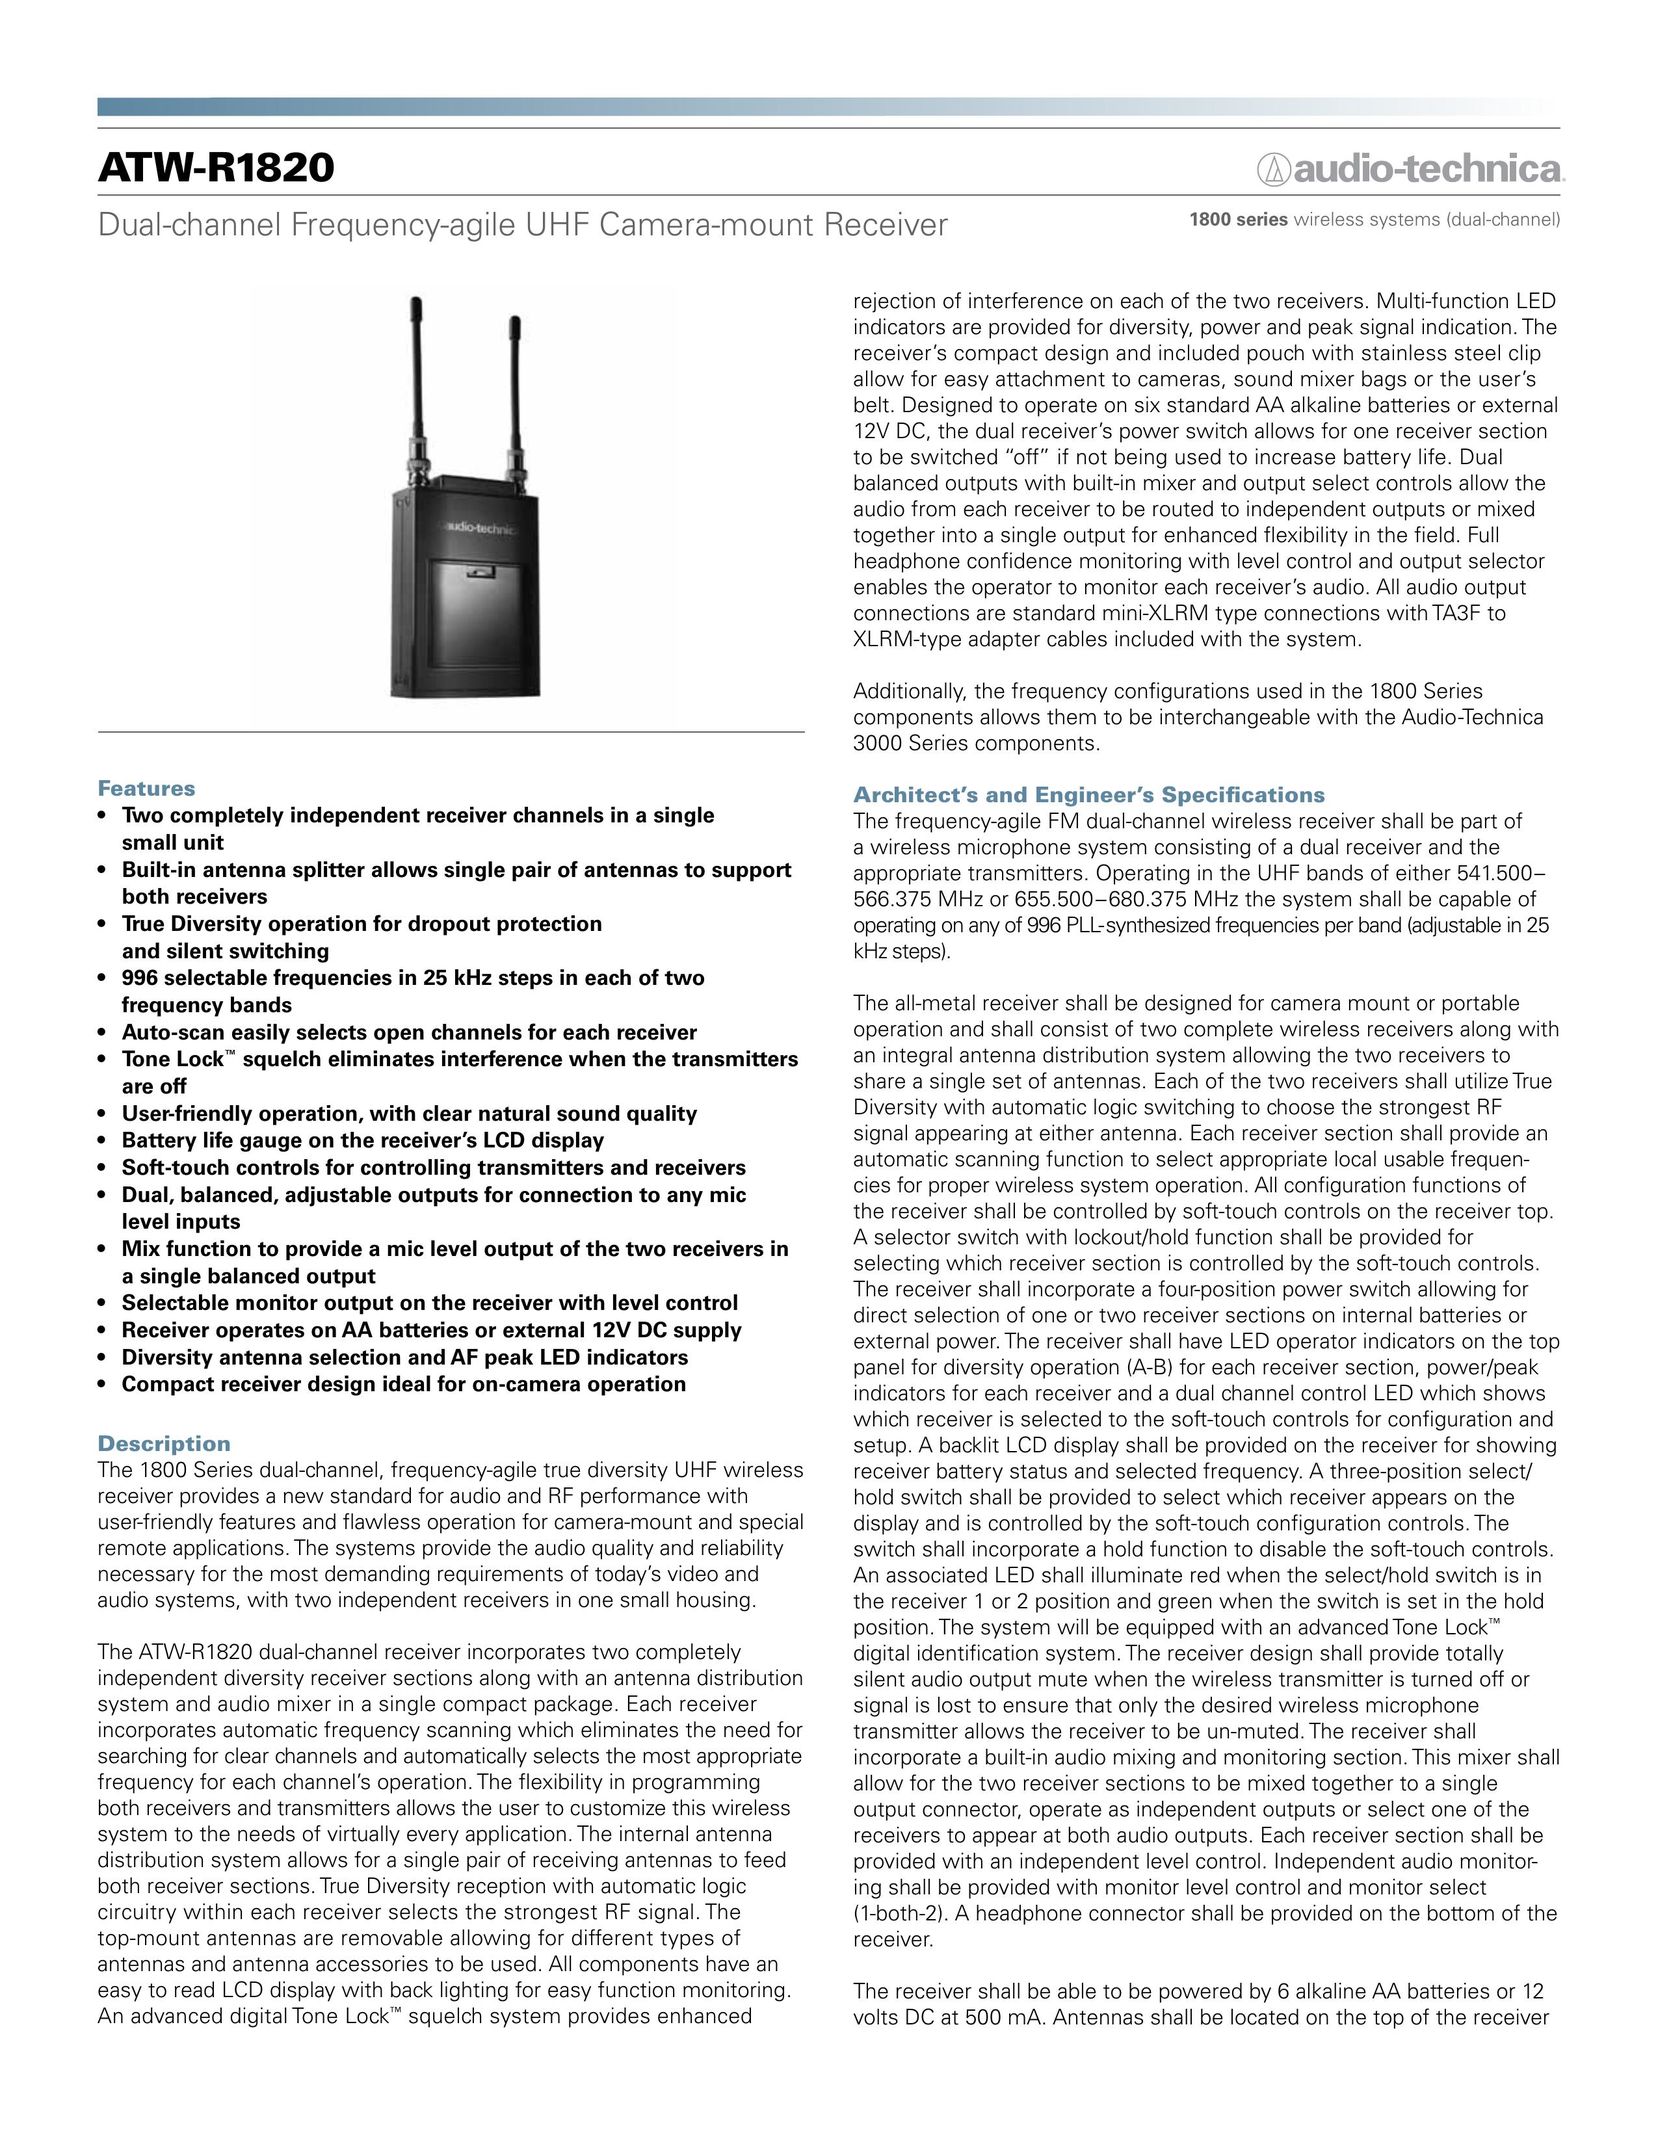 Audio-Technica ATW-R1820 Two-Way Radio User Manual